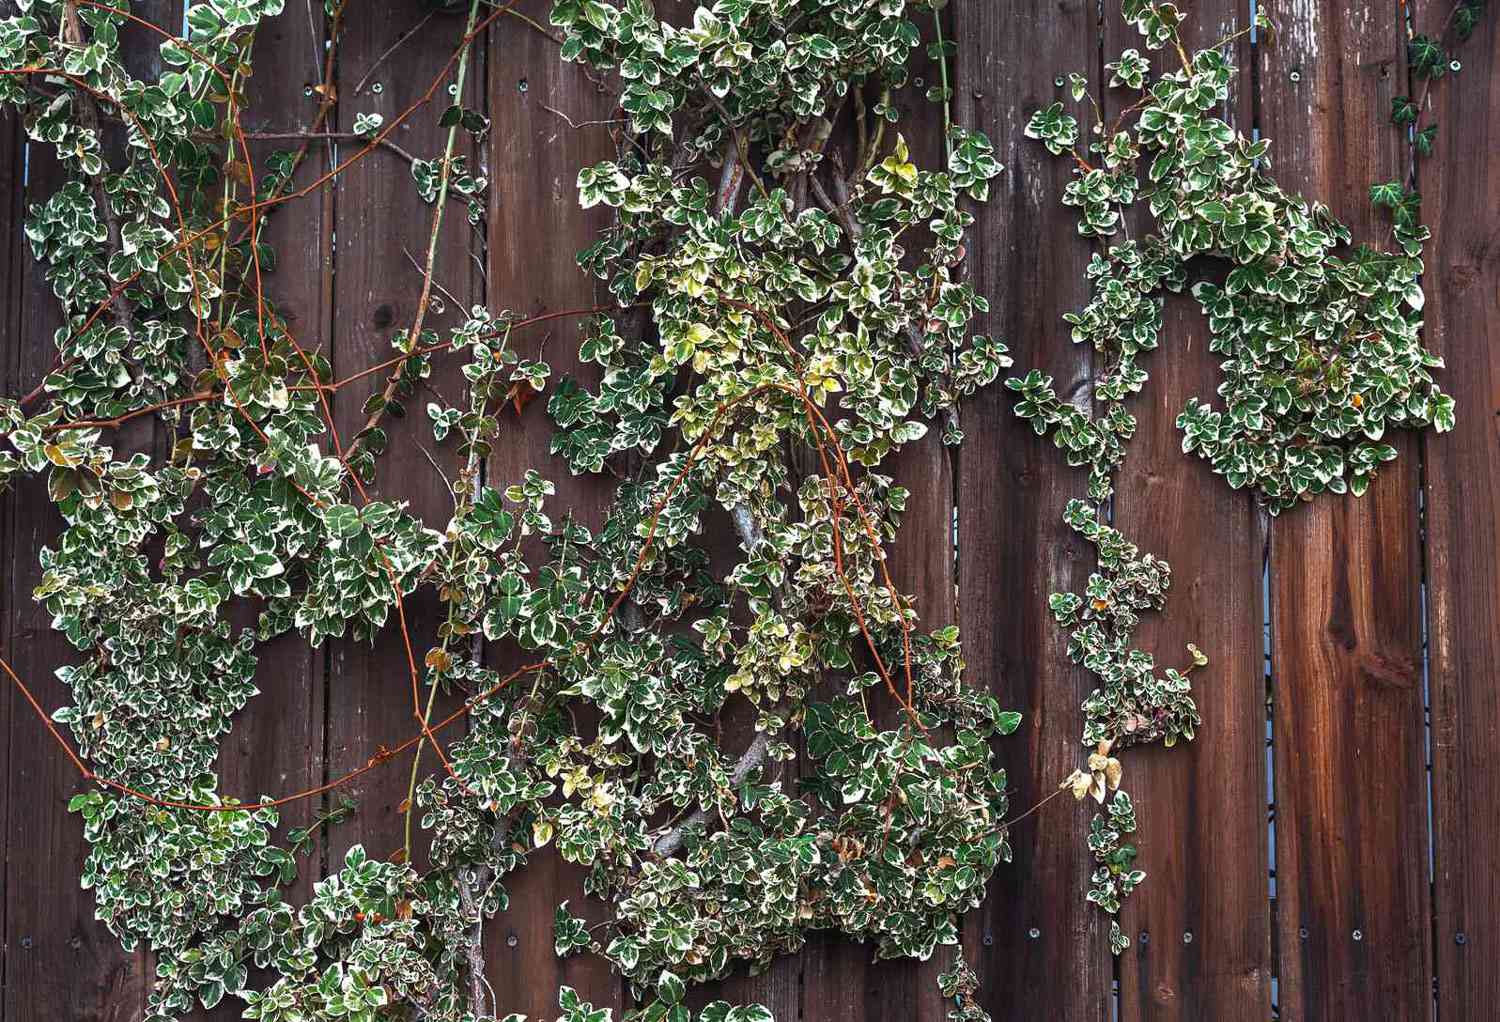 Smaragdgrüne, fröhliche Euonymus-Ranken klettern an einem dunklen Holzzaun mit kleinen grünen und weißen Blättern